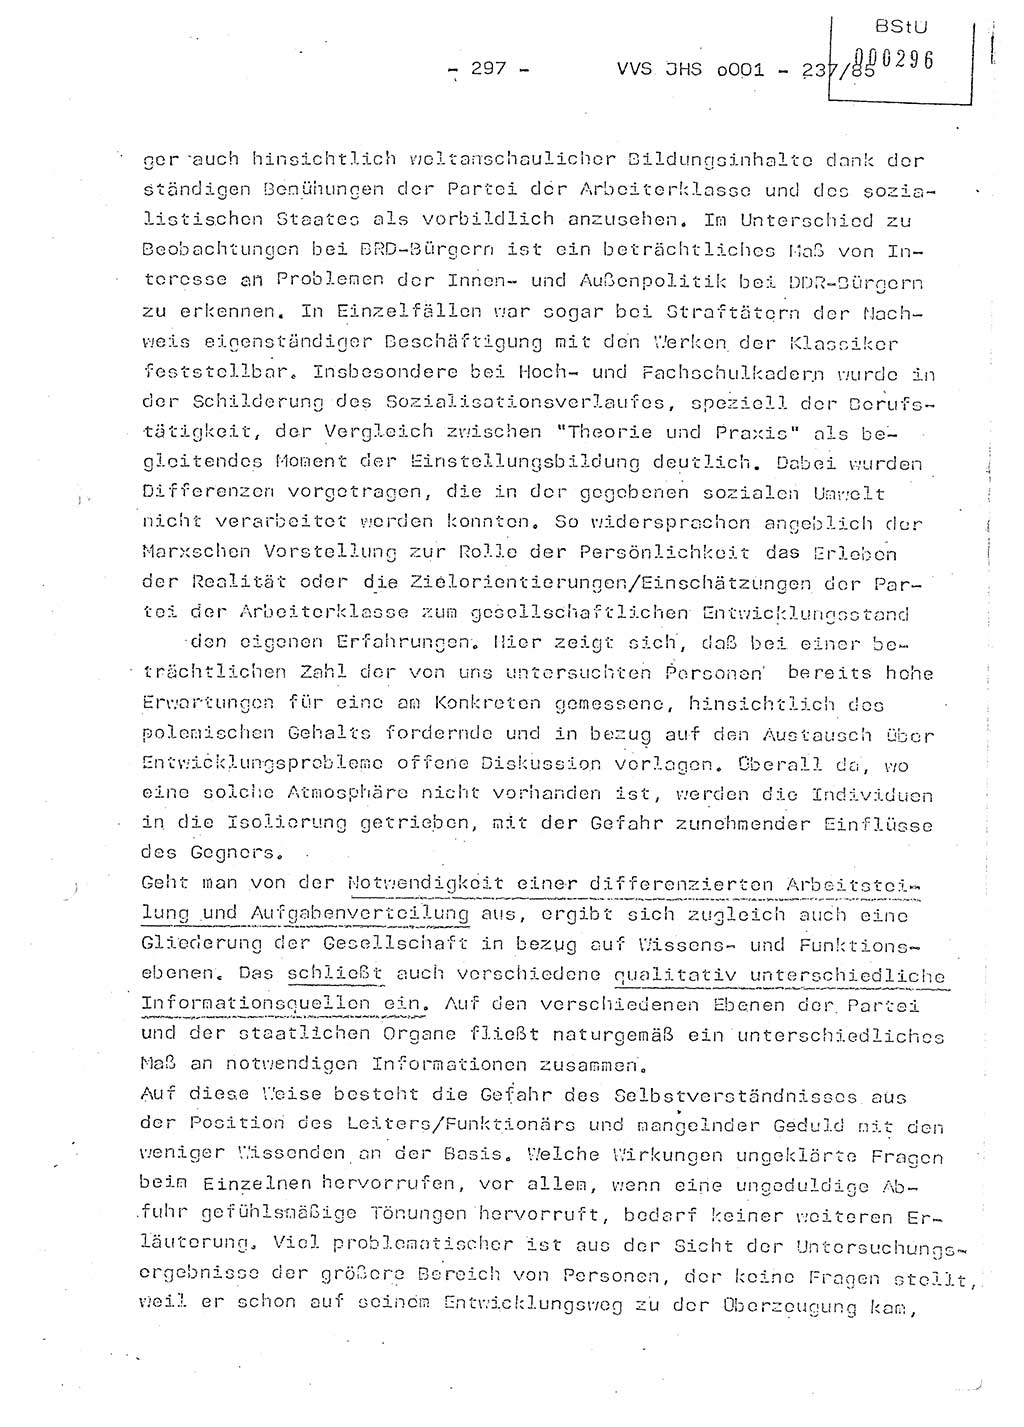 Dissertation Oberstleutnant Peter Jakulski (JHS), Oberstleutnat Christian Rudolph (HA Ⅸ), Major Horst Böttger (ZMD), Major Wolfgang Grüneberg (JHS), Major Albert Meutsch (JHS), Ministerium für Staatssicherheit (MfS) [Deutsche Demokratische Republik (DDR)], Juristische Hochschule (JHS), Vertrauliche Verschlußsache (VVS) o001-237/85, Potsdam 1985, Seite 297 (Diss. MfS DDR JHS VVS o001-237/85 1985, S. 297)